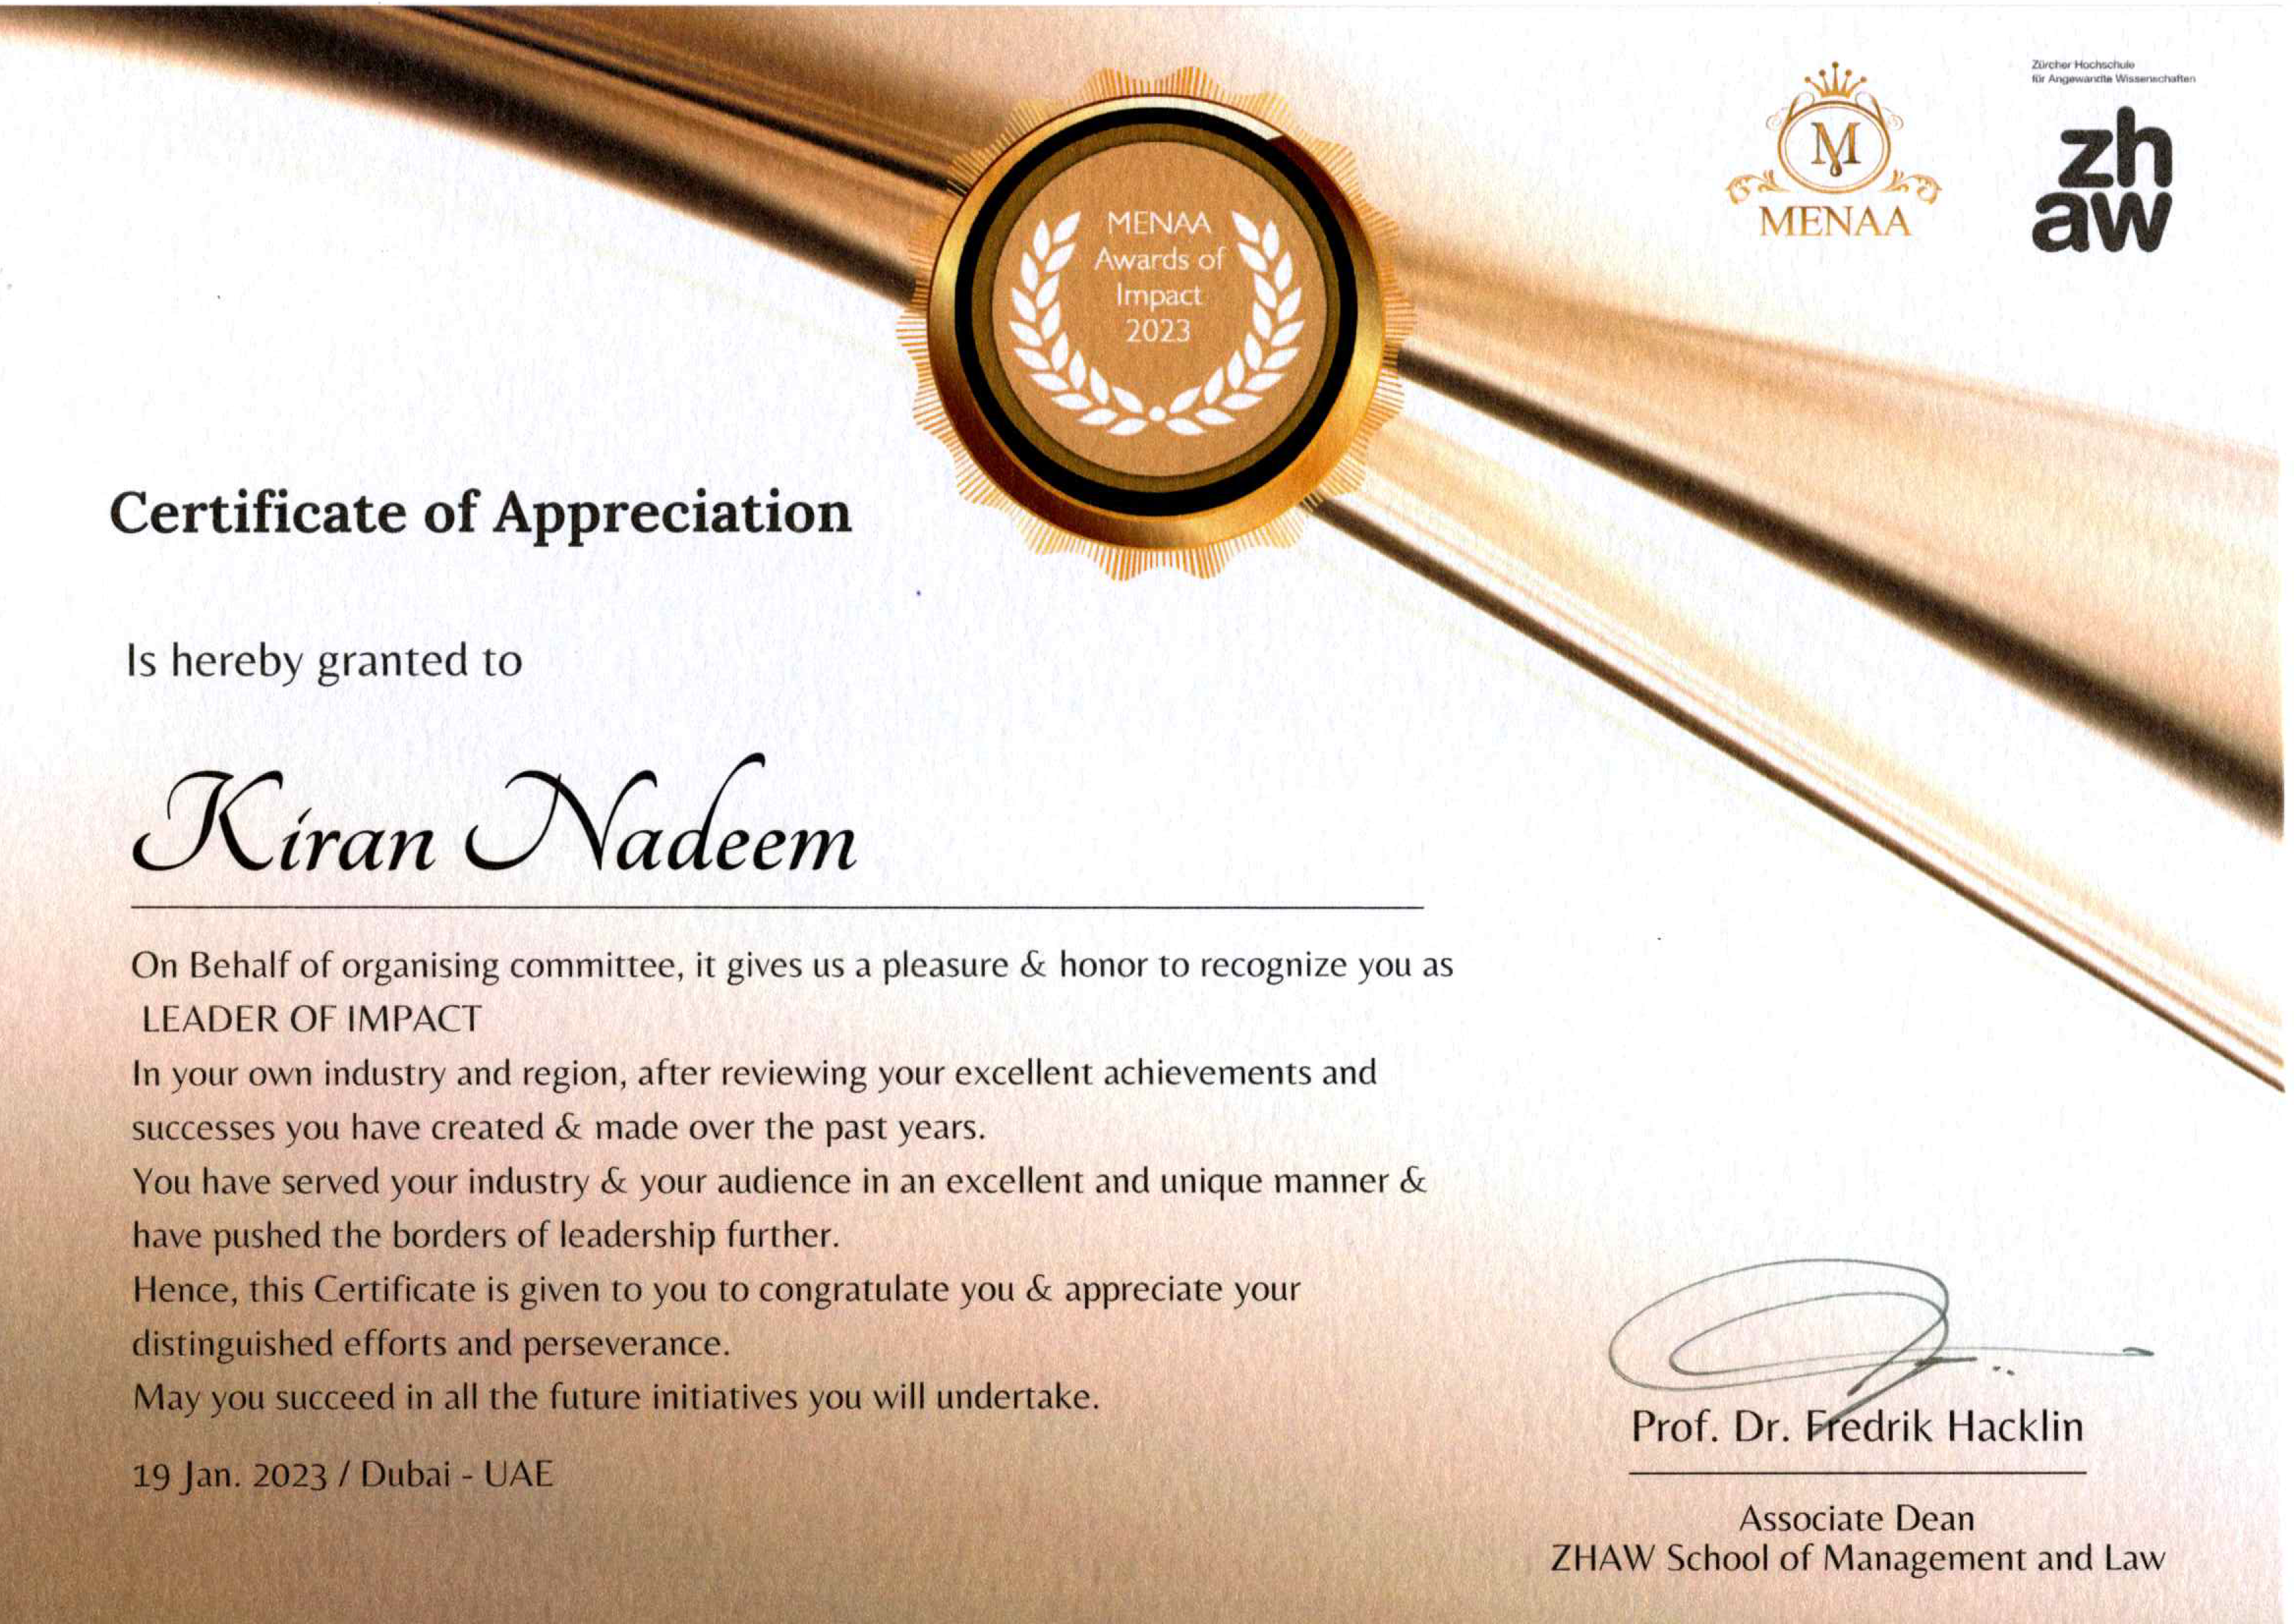 Certificate of Appreciation Menaa Awards of Impact 2023 Kiran Nadeem Khwaja